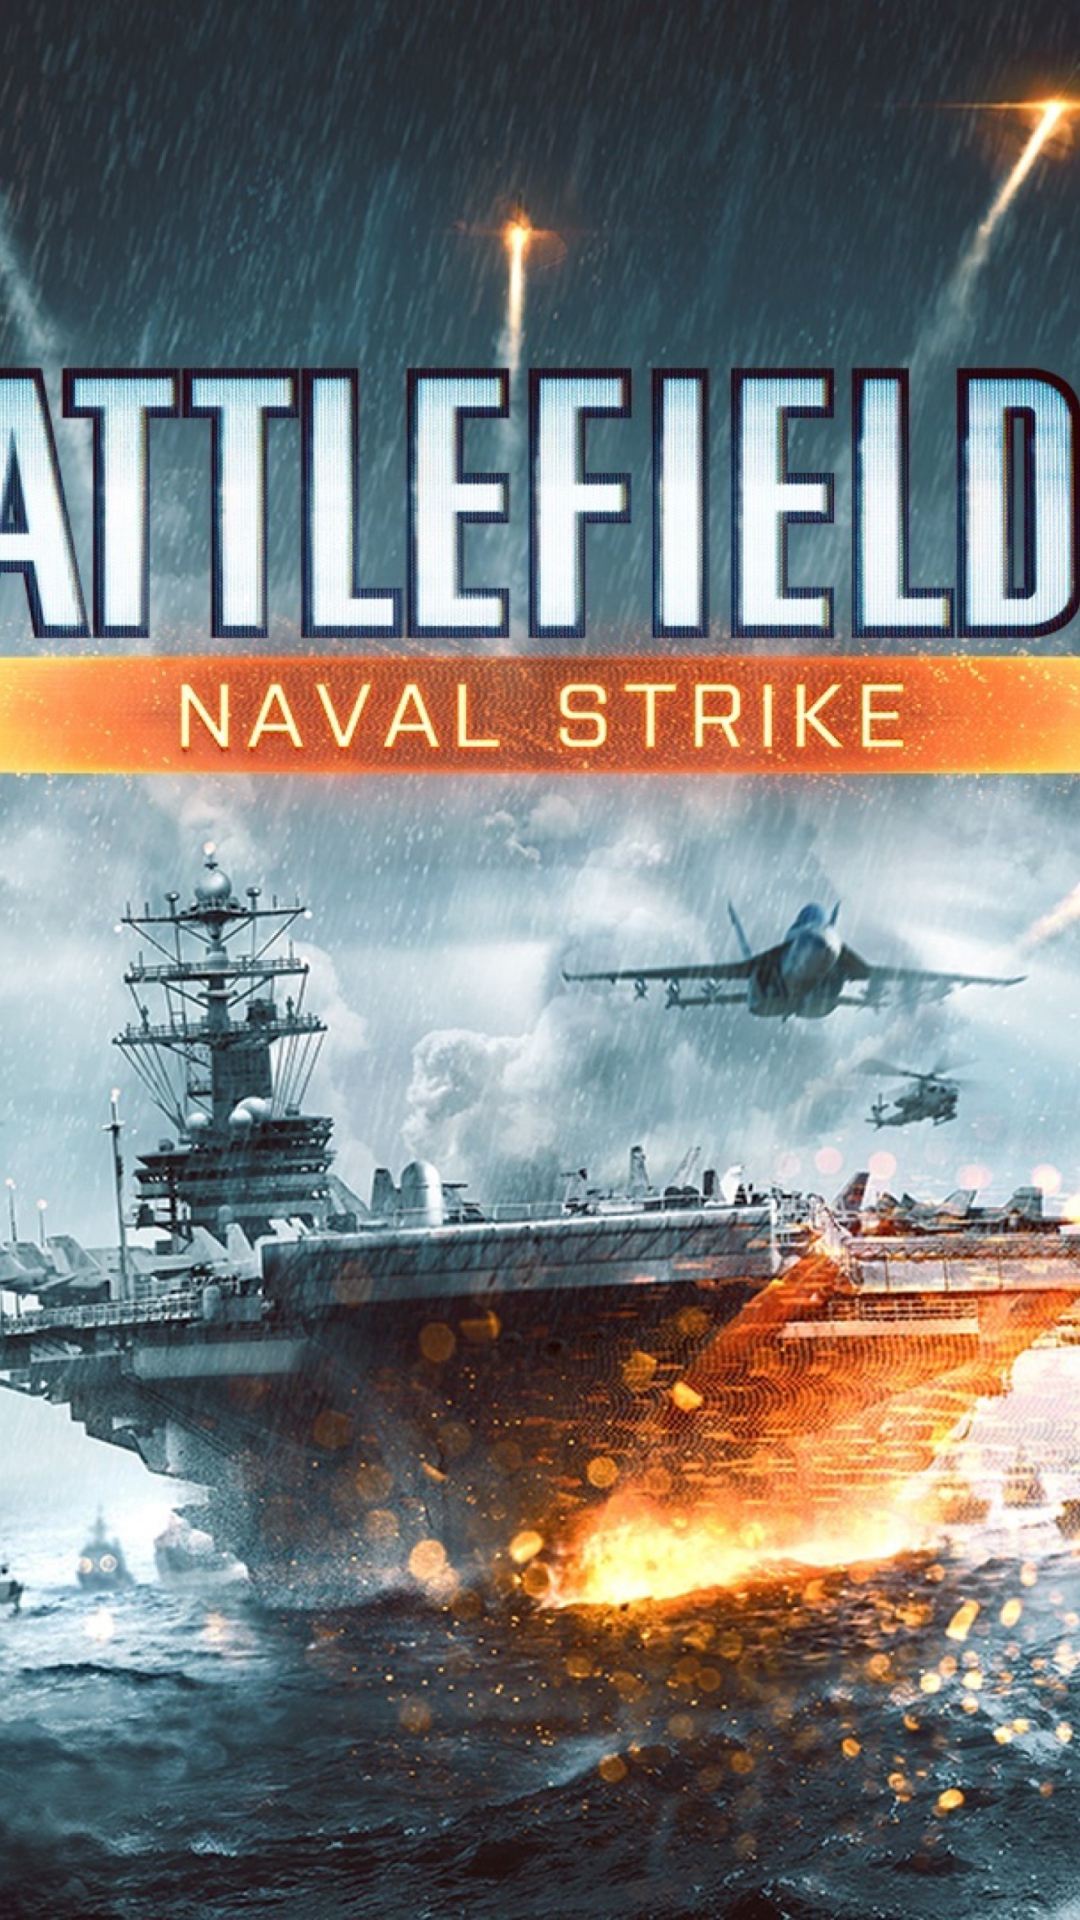 Das Battlefield 4 Naval Strike Wallpaper 1080x1920